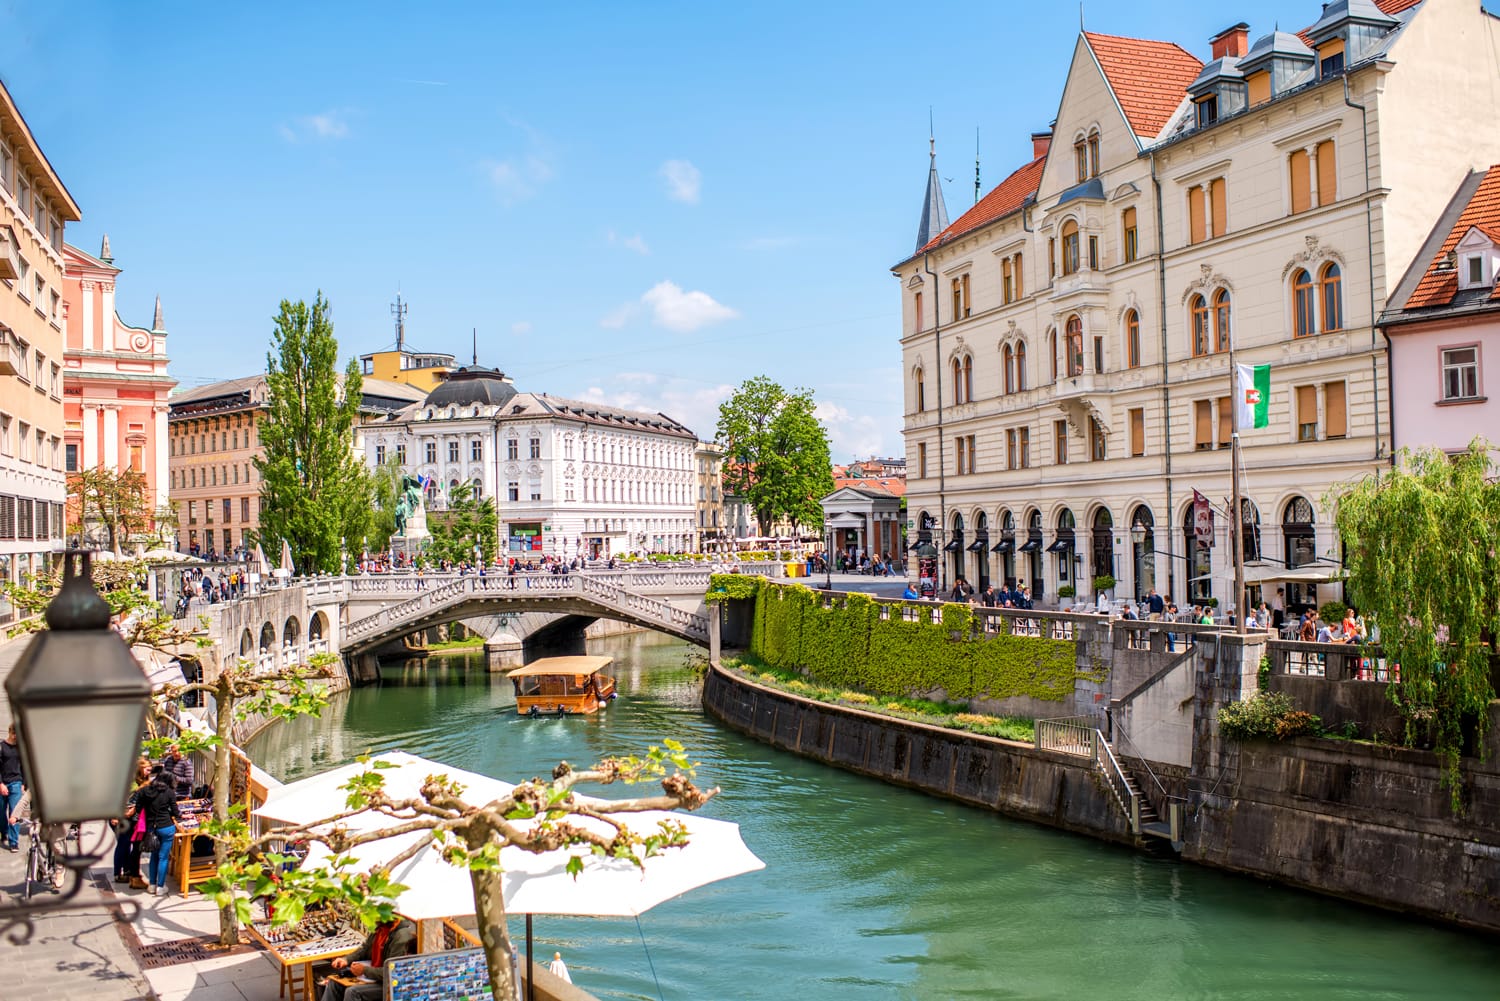 Άποψη αστικό τοπίο στο κανάλι του ποταμού Ljubljanica στην παλιά πόλη της Λιουμπλιάνα.  Η Λιουμπλιάνα είναι η πρωτεύουσα της Σλοβενίας και διάσημος ευρωπαϊκός τουριστικός προορισμός.